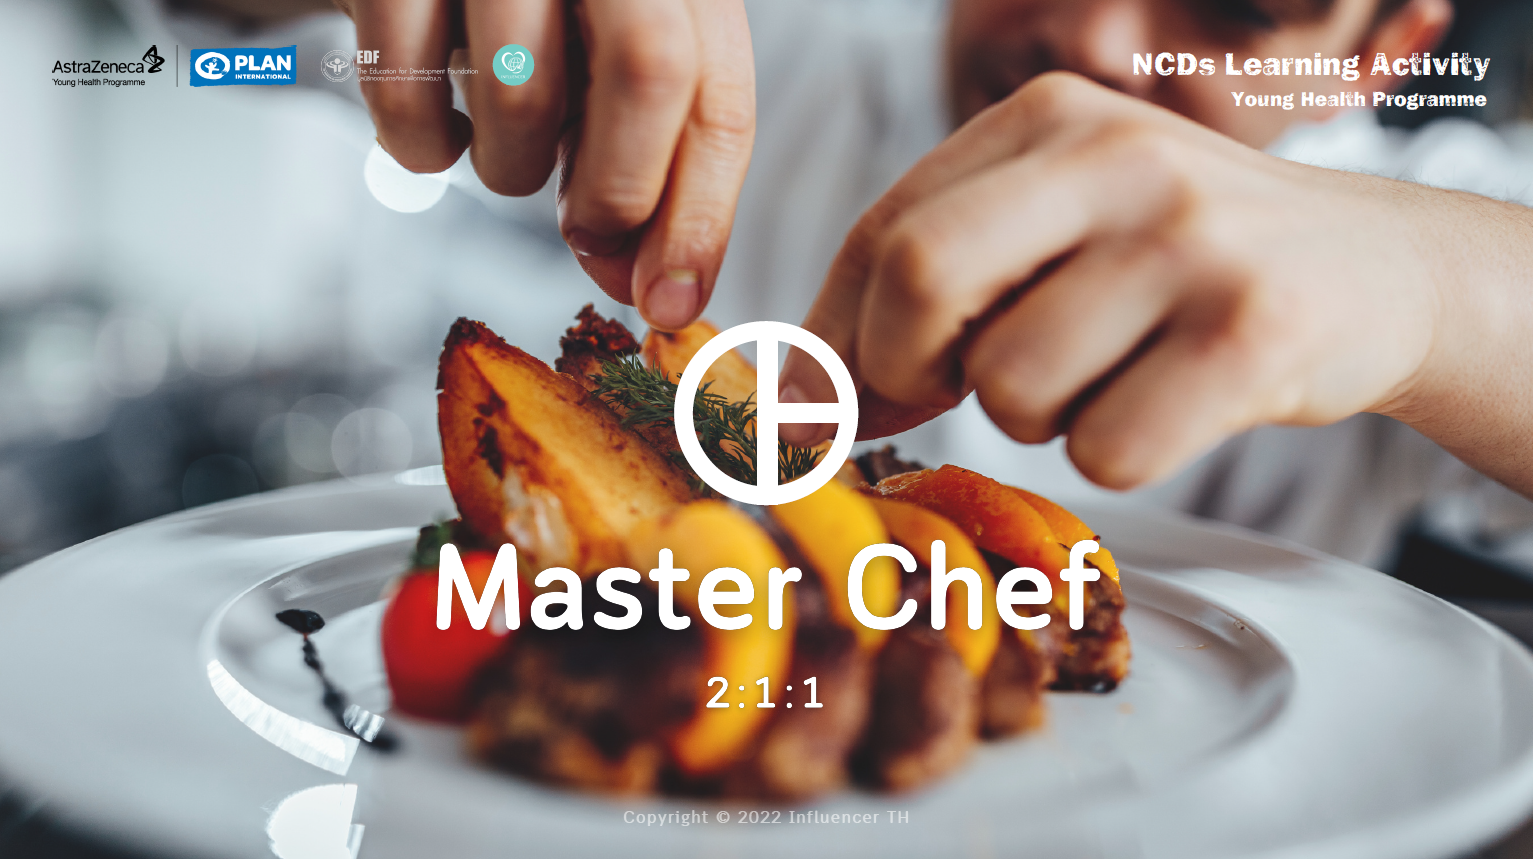 ภาพประกอบไอเดีย Master Chef 2:1:1 กินดีเพื่อสุขภาพ 